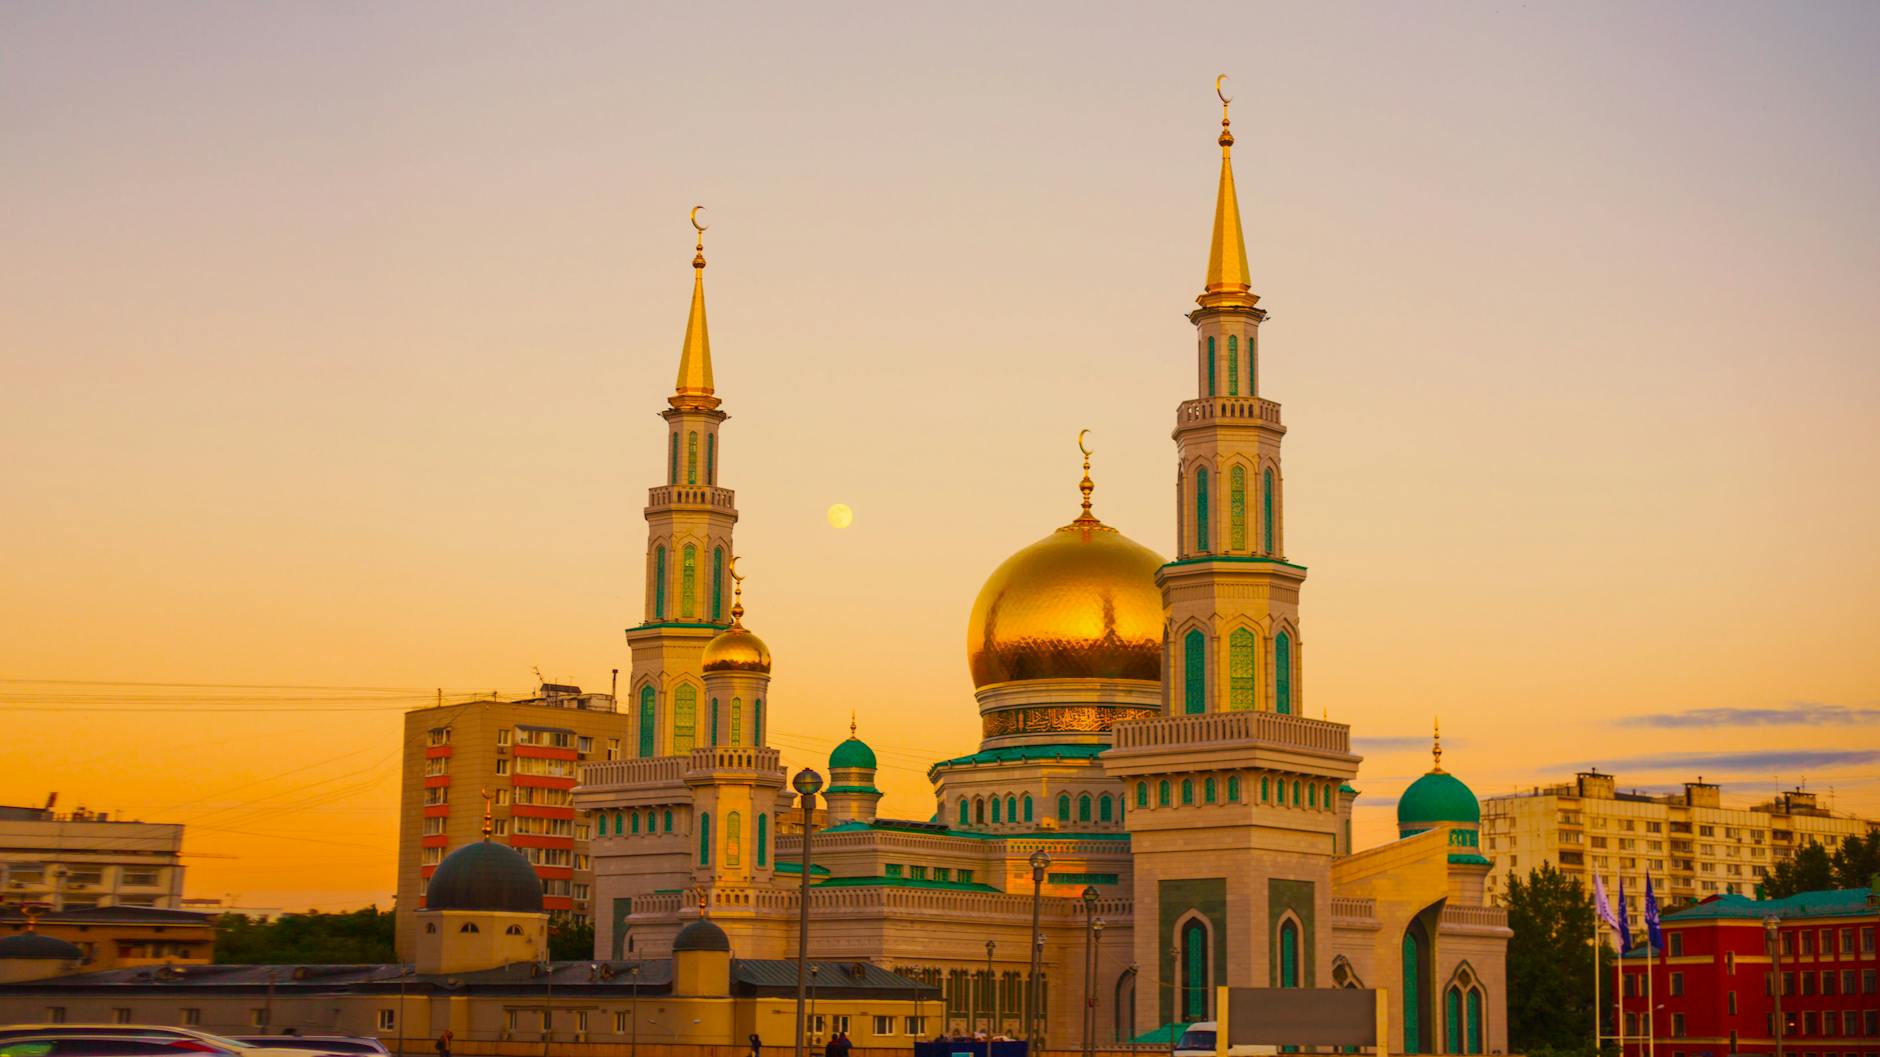 صور مساجد من حول العالم Moscow-cathedral-mosque-prospekt-mira-ramadan-sky-161276